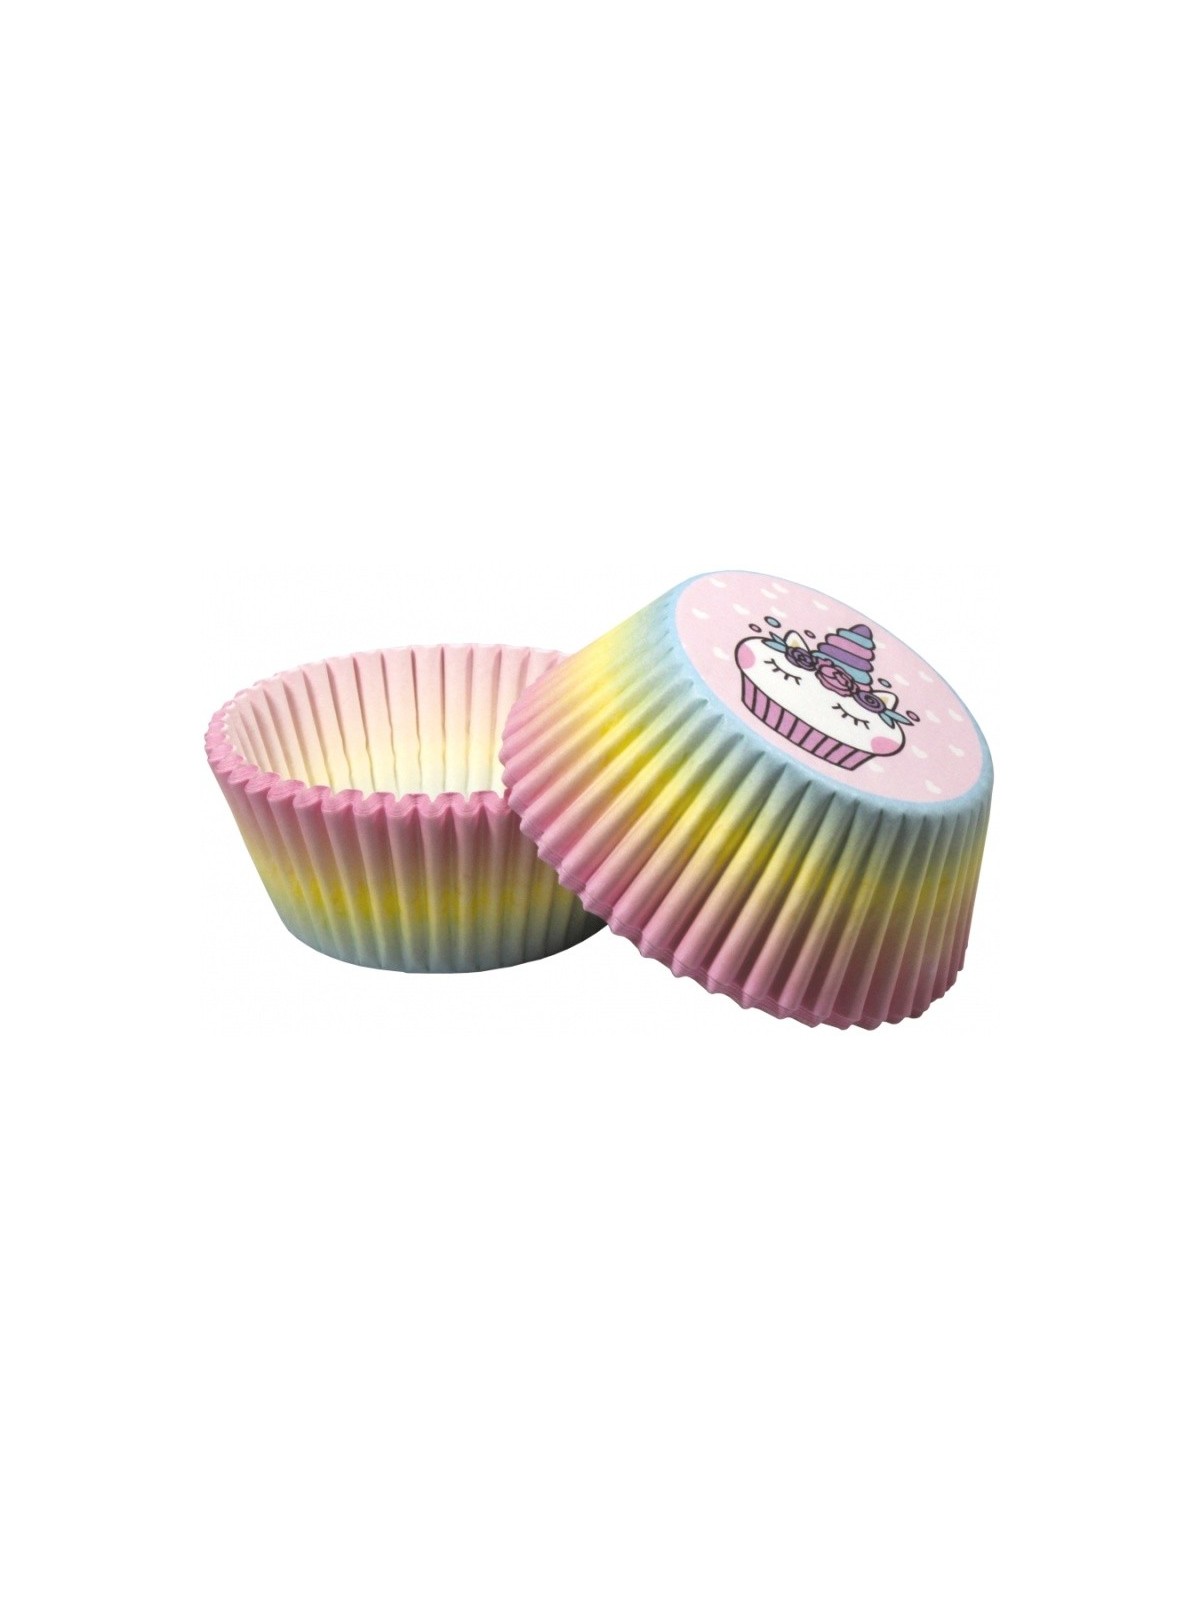 Baking Cups - Regenbogen Einhorn - 50 Stück